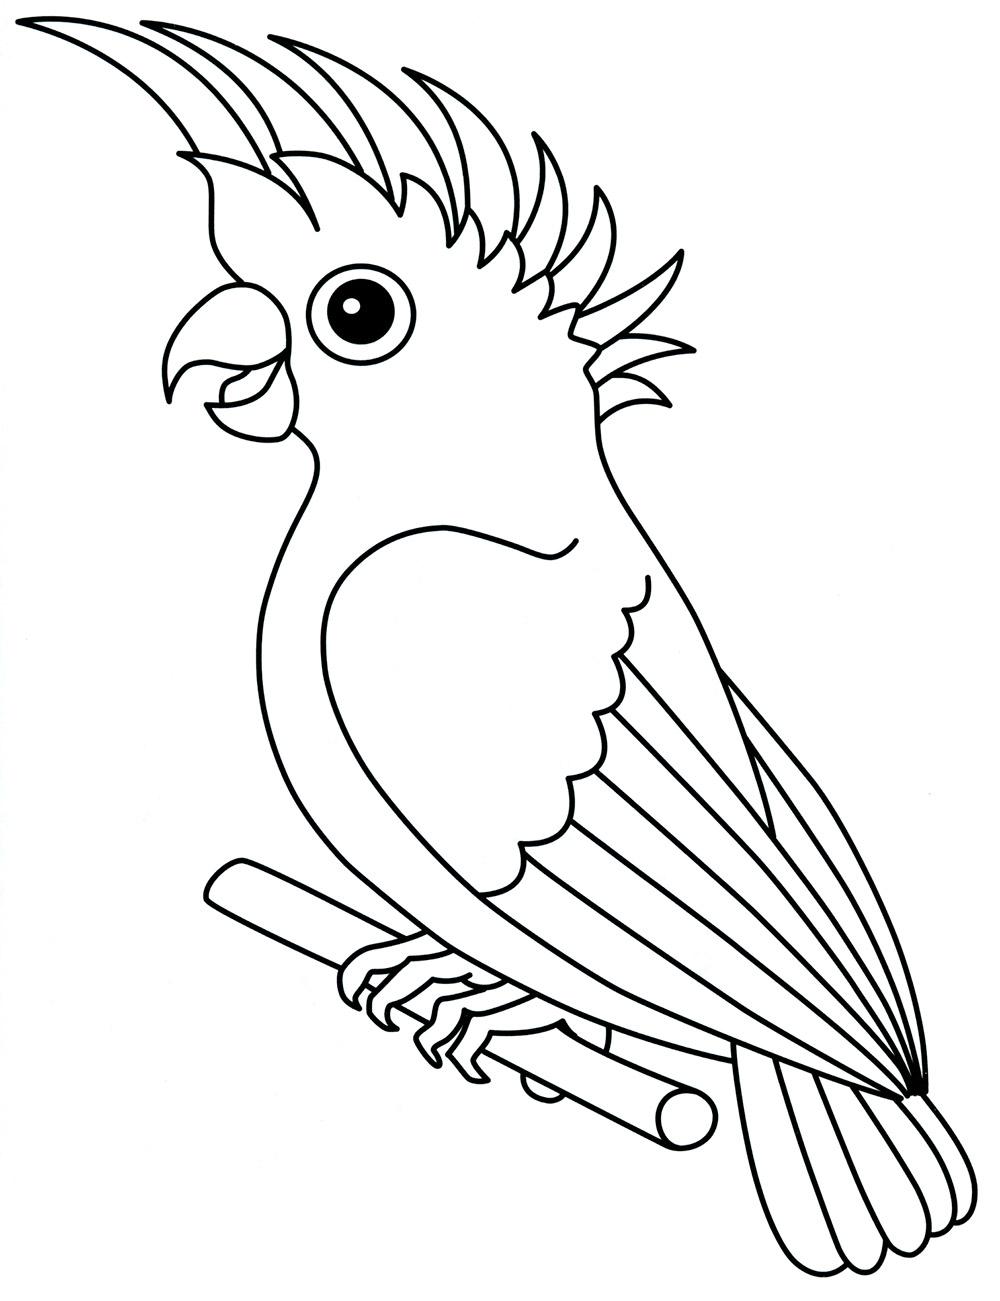 Раскраски попугай попугайчик самка попугай  Раскраска попугай с хохолком